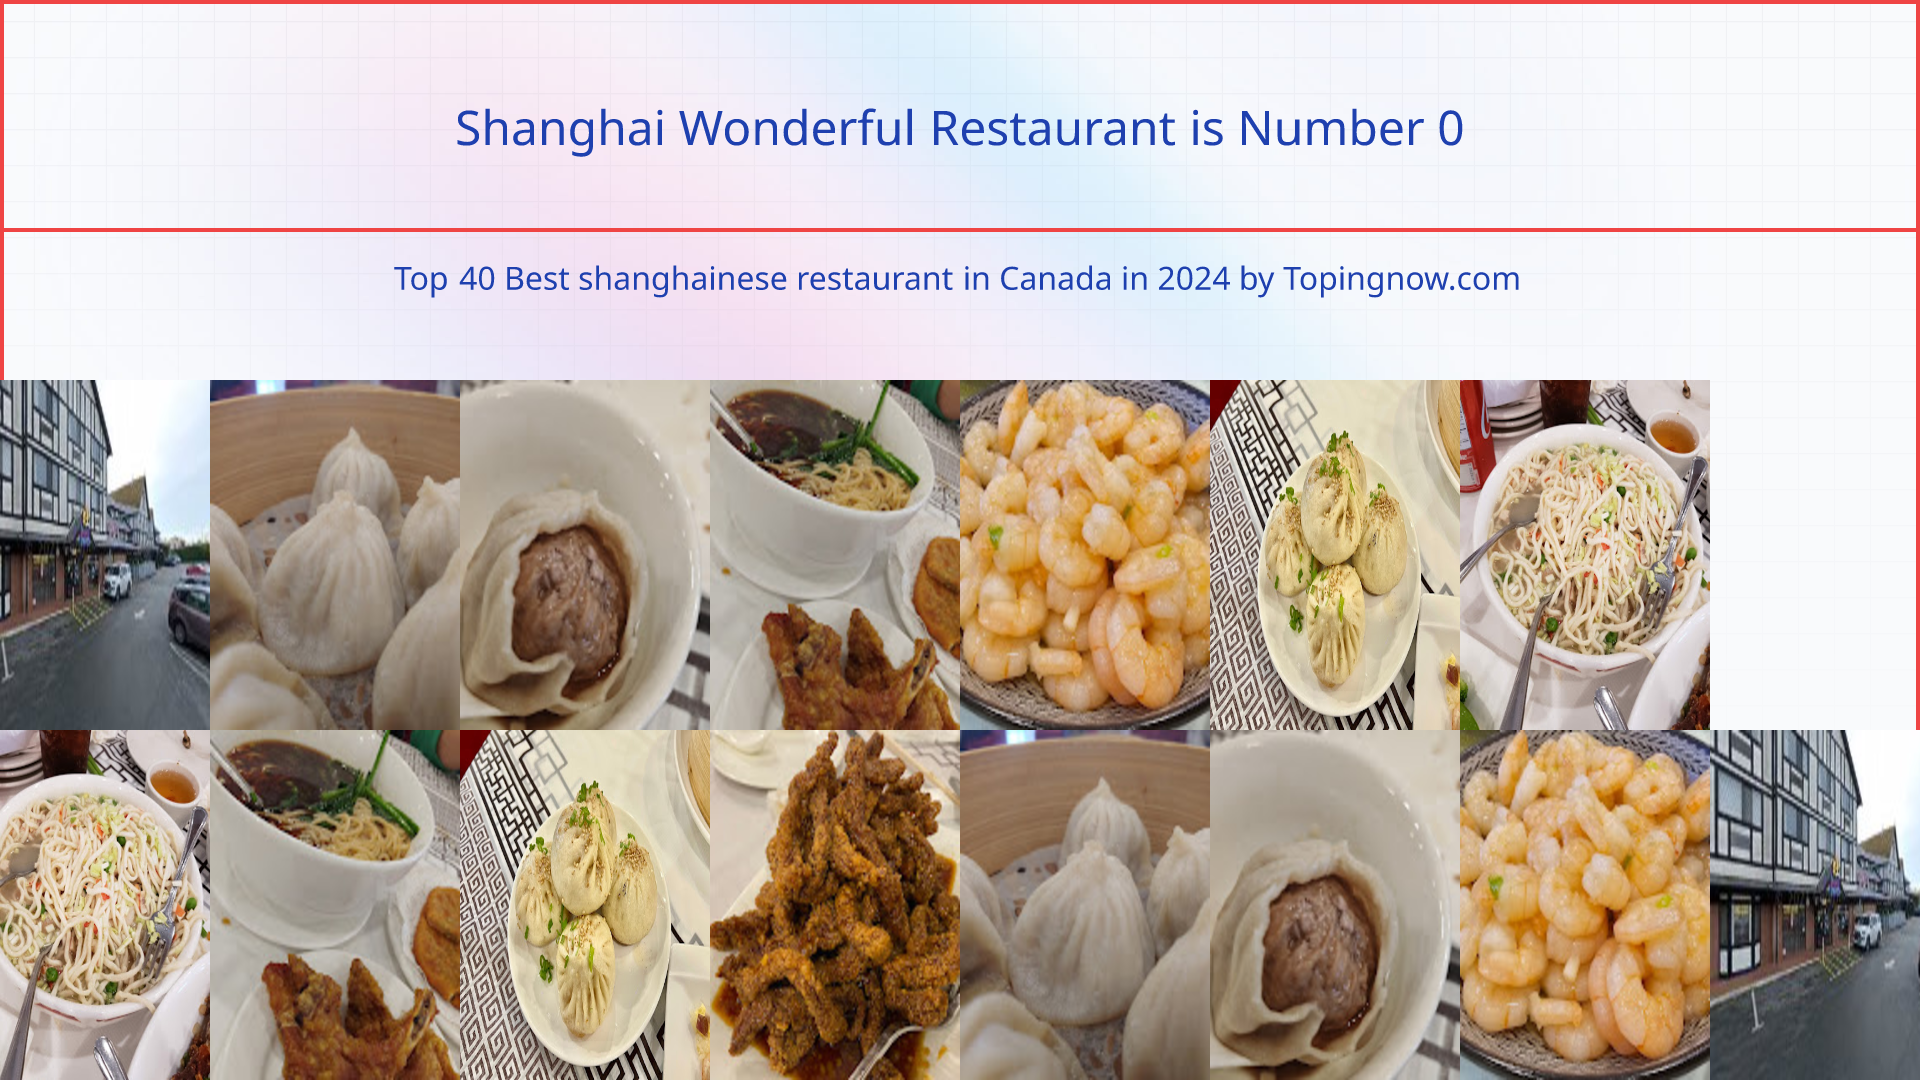 Shanghai Wonderful Restaurant: Top 40 Best shanghainese restaurant in Canada in 2024